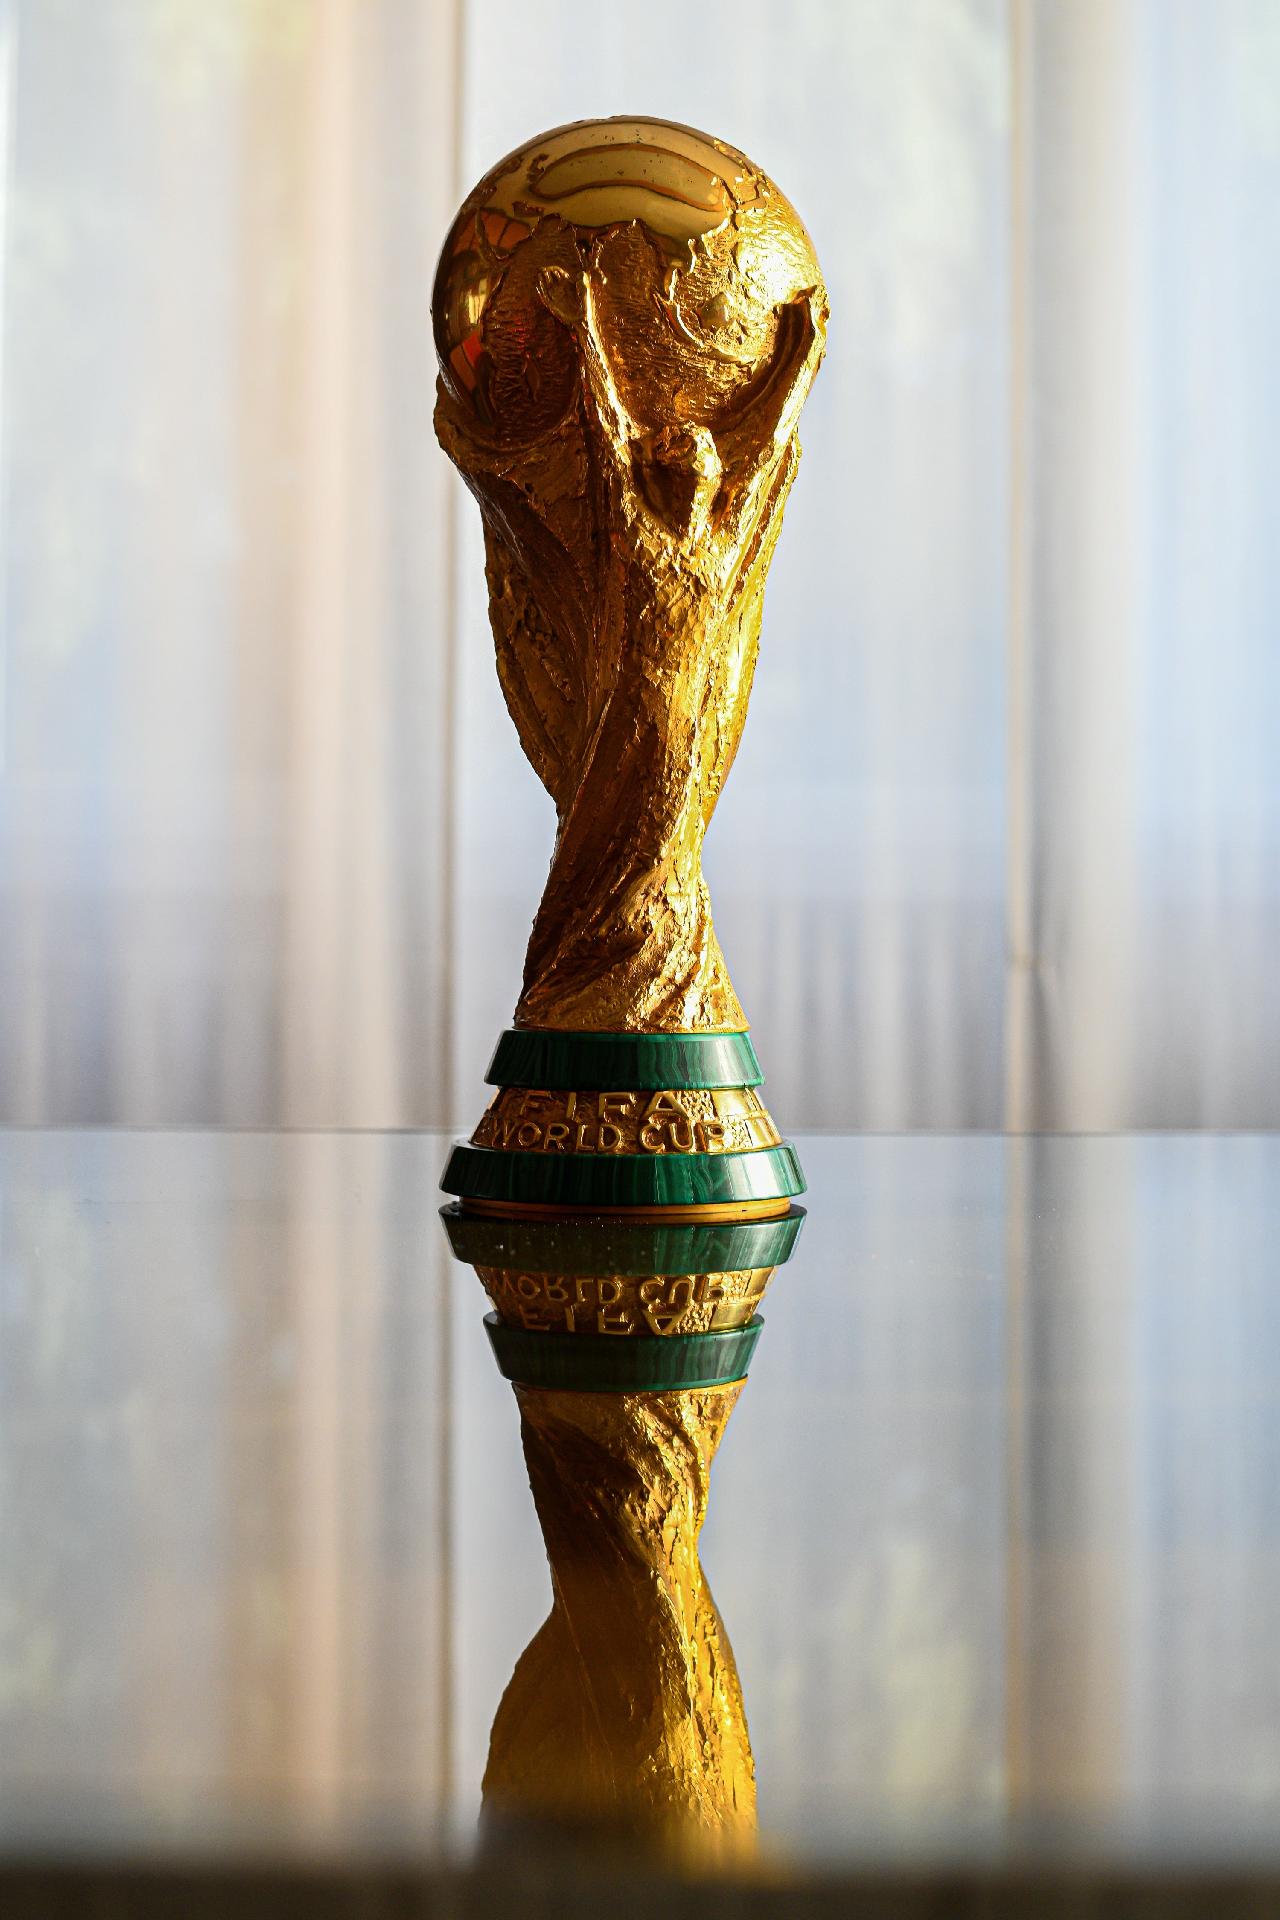 Copa do Mundo de 2018: qual a premiação em dinheiro entregue ao campeão?